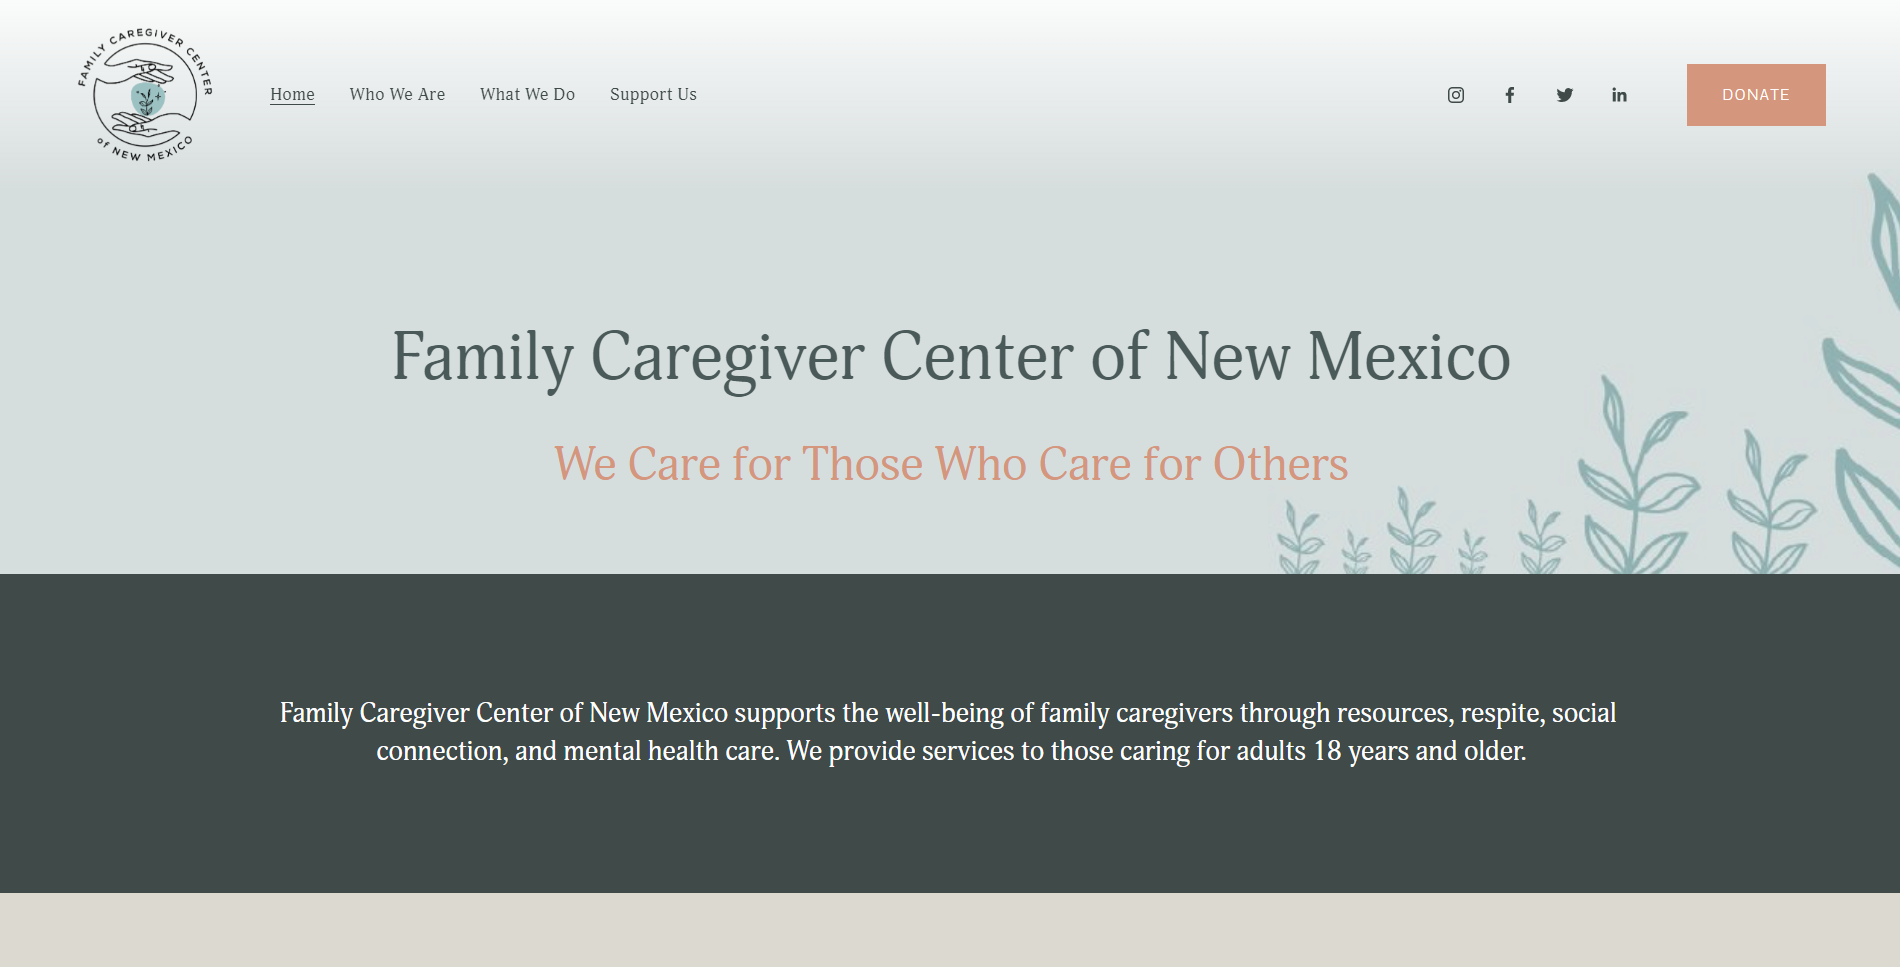 Family Caregiver Center of New Mexico